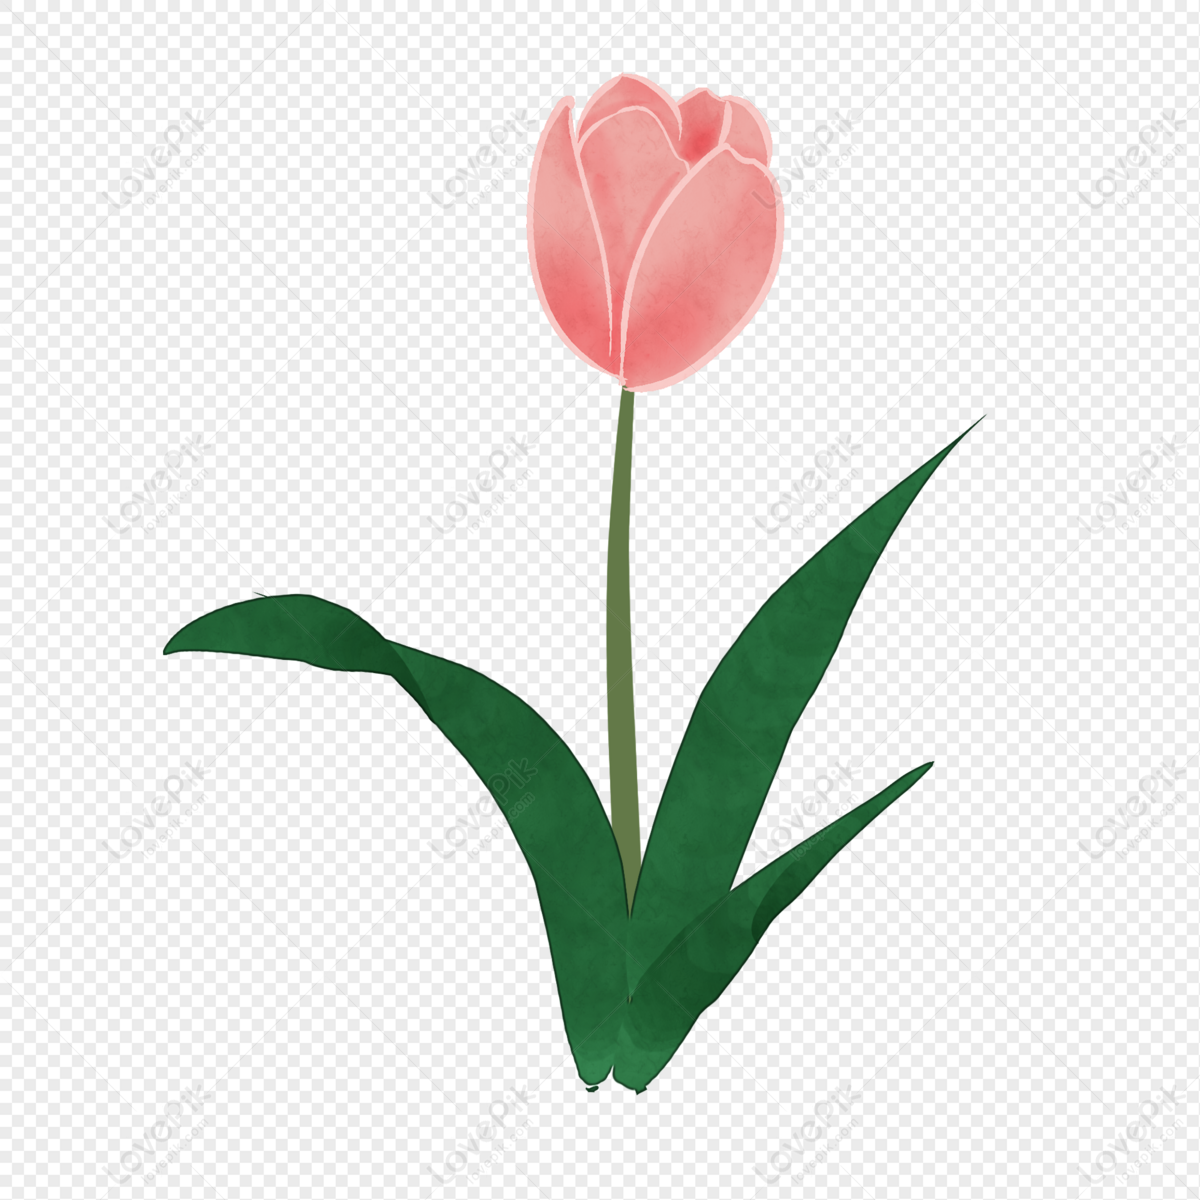 Hình ảnh Phim Hoạt Hình Hoa Tulip Màu Hồng PNG Miễn Phí Tải Về ...